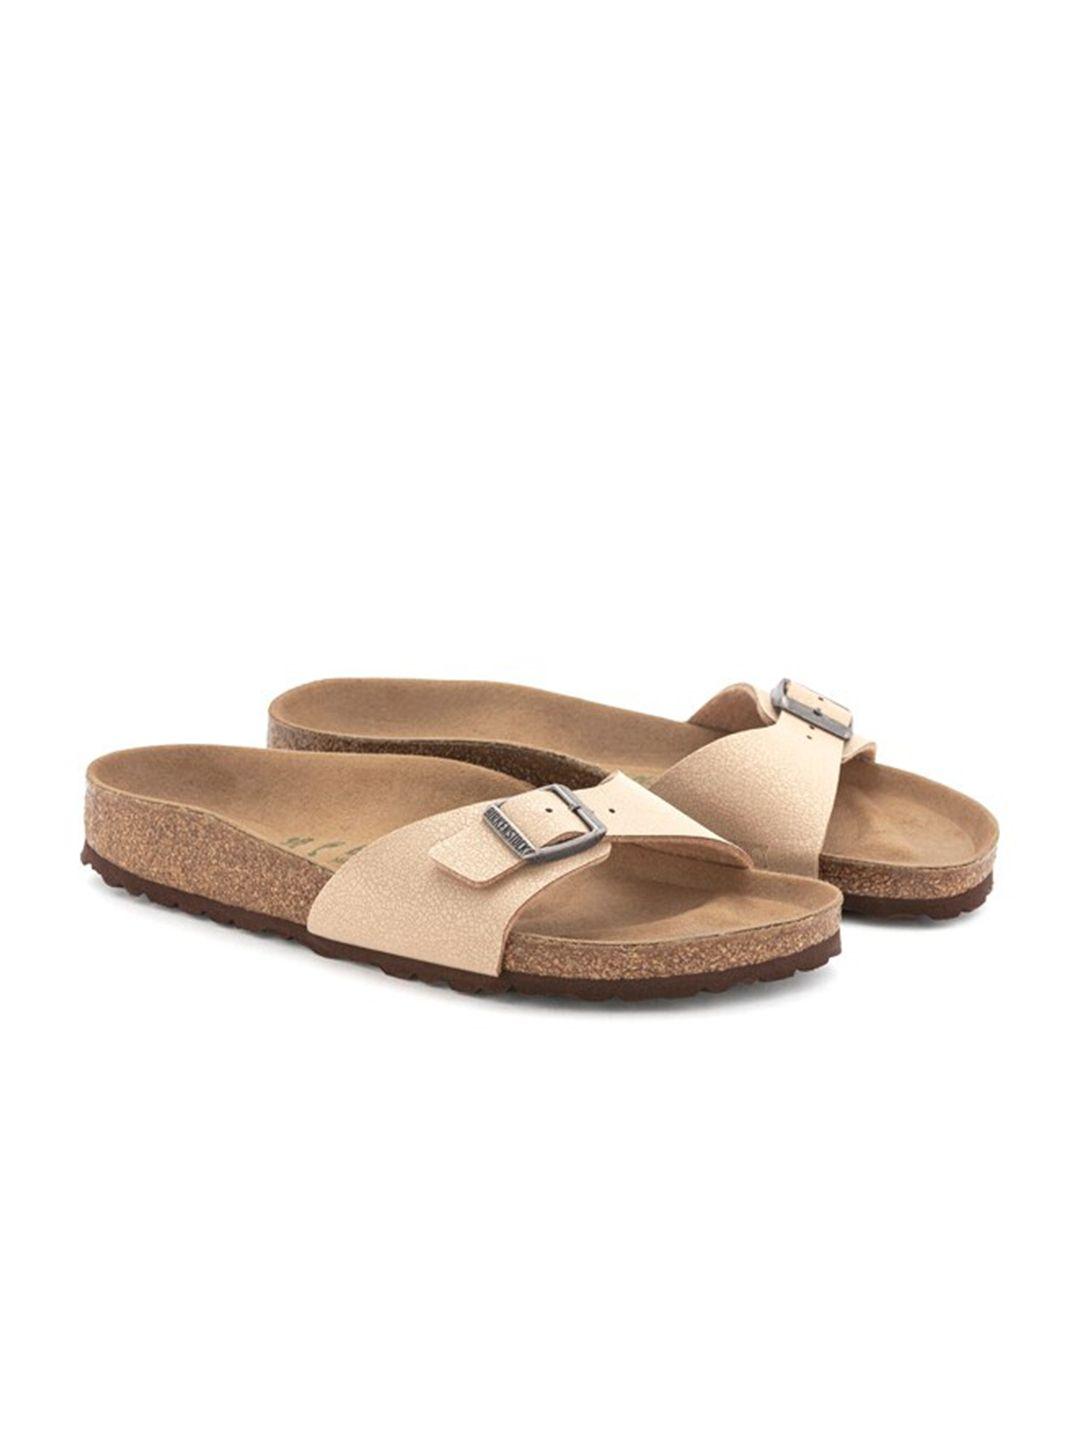 birkenstock madrid one-strap narrow width comfort sandals